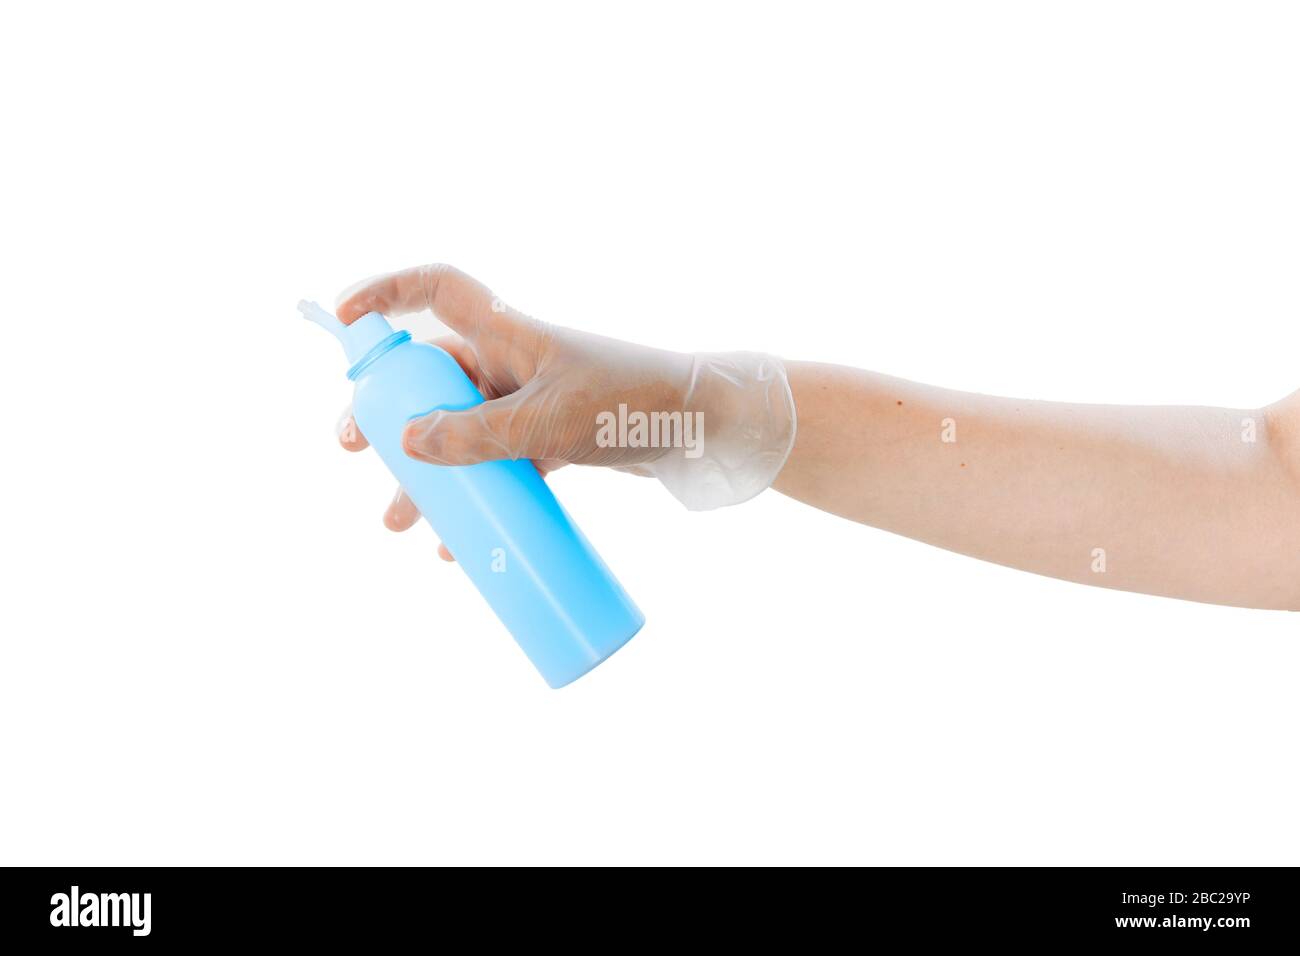 Risciacquare il naso con acqua salata. Una mano in un guanto medico in lattice trasparente contiene una soluzione per il risciacquo del naso. Foto Stock